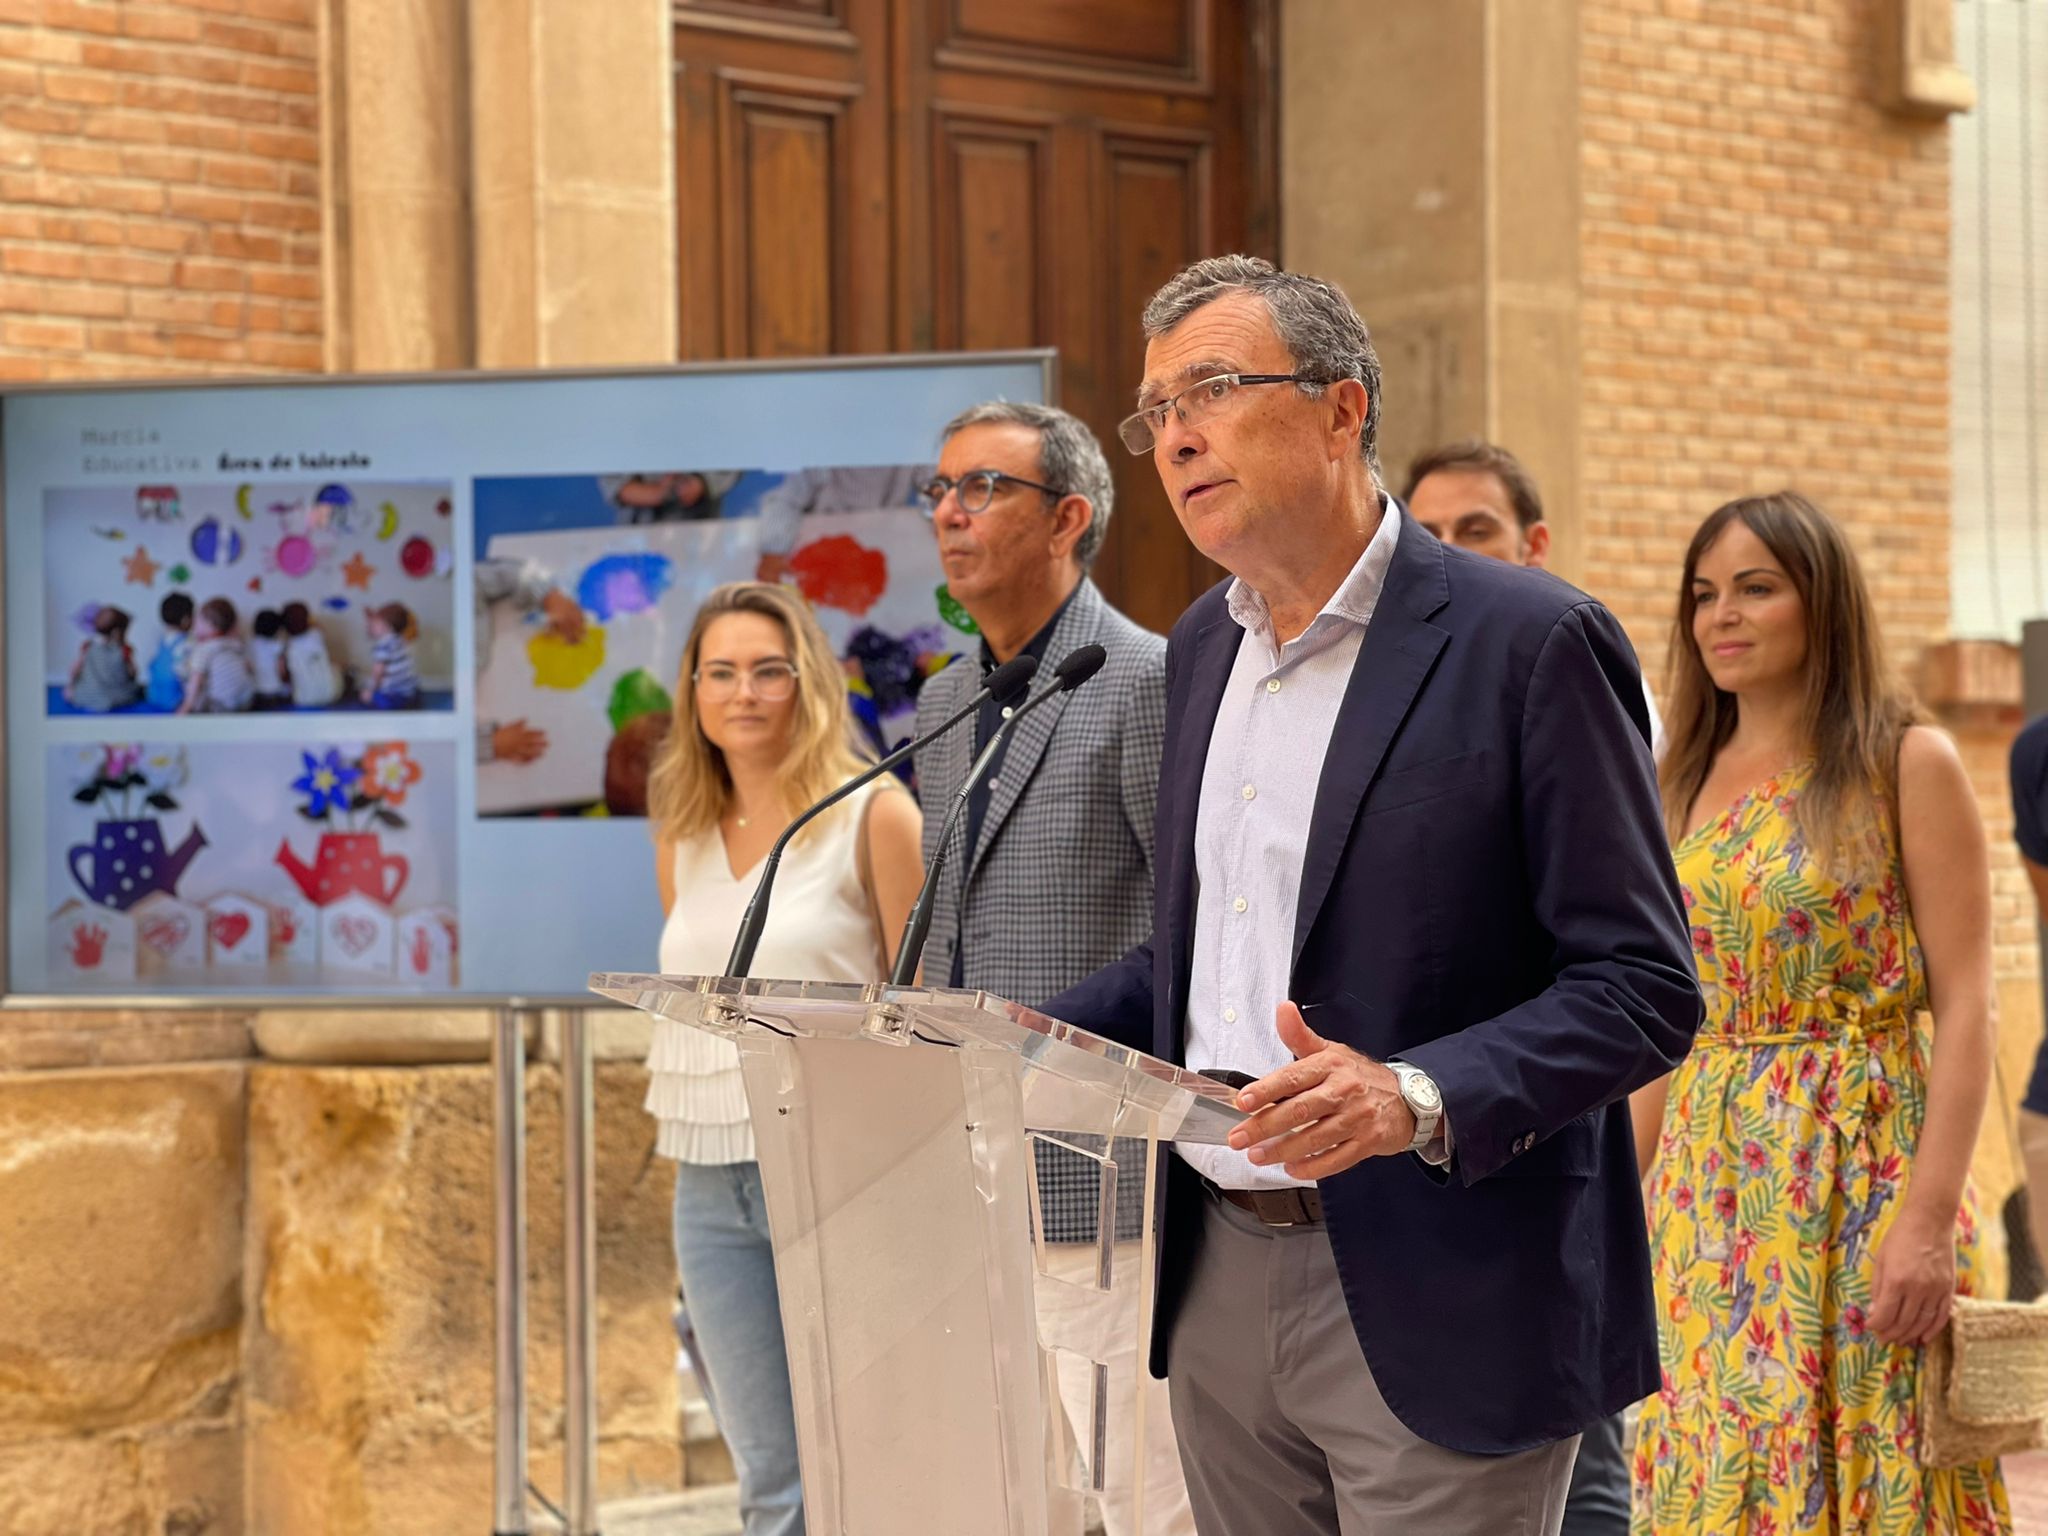 ‘Murcia, Área de Talento’ creará una red pionera de escuelas municipales en STEAM, idiomas, artes escénicas y música